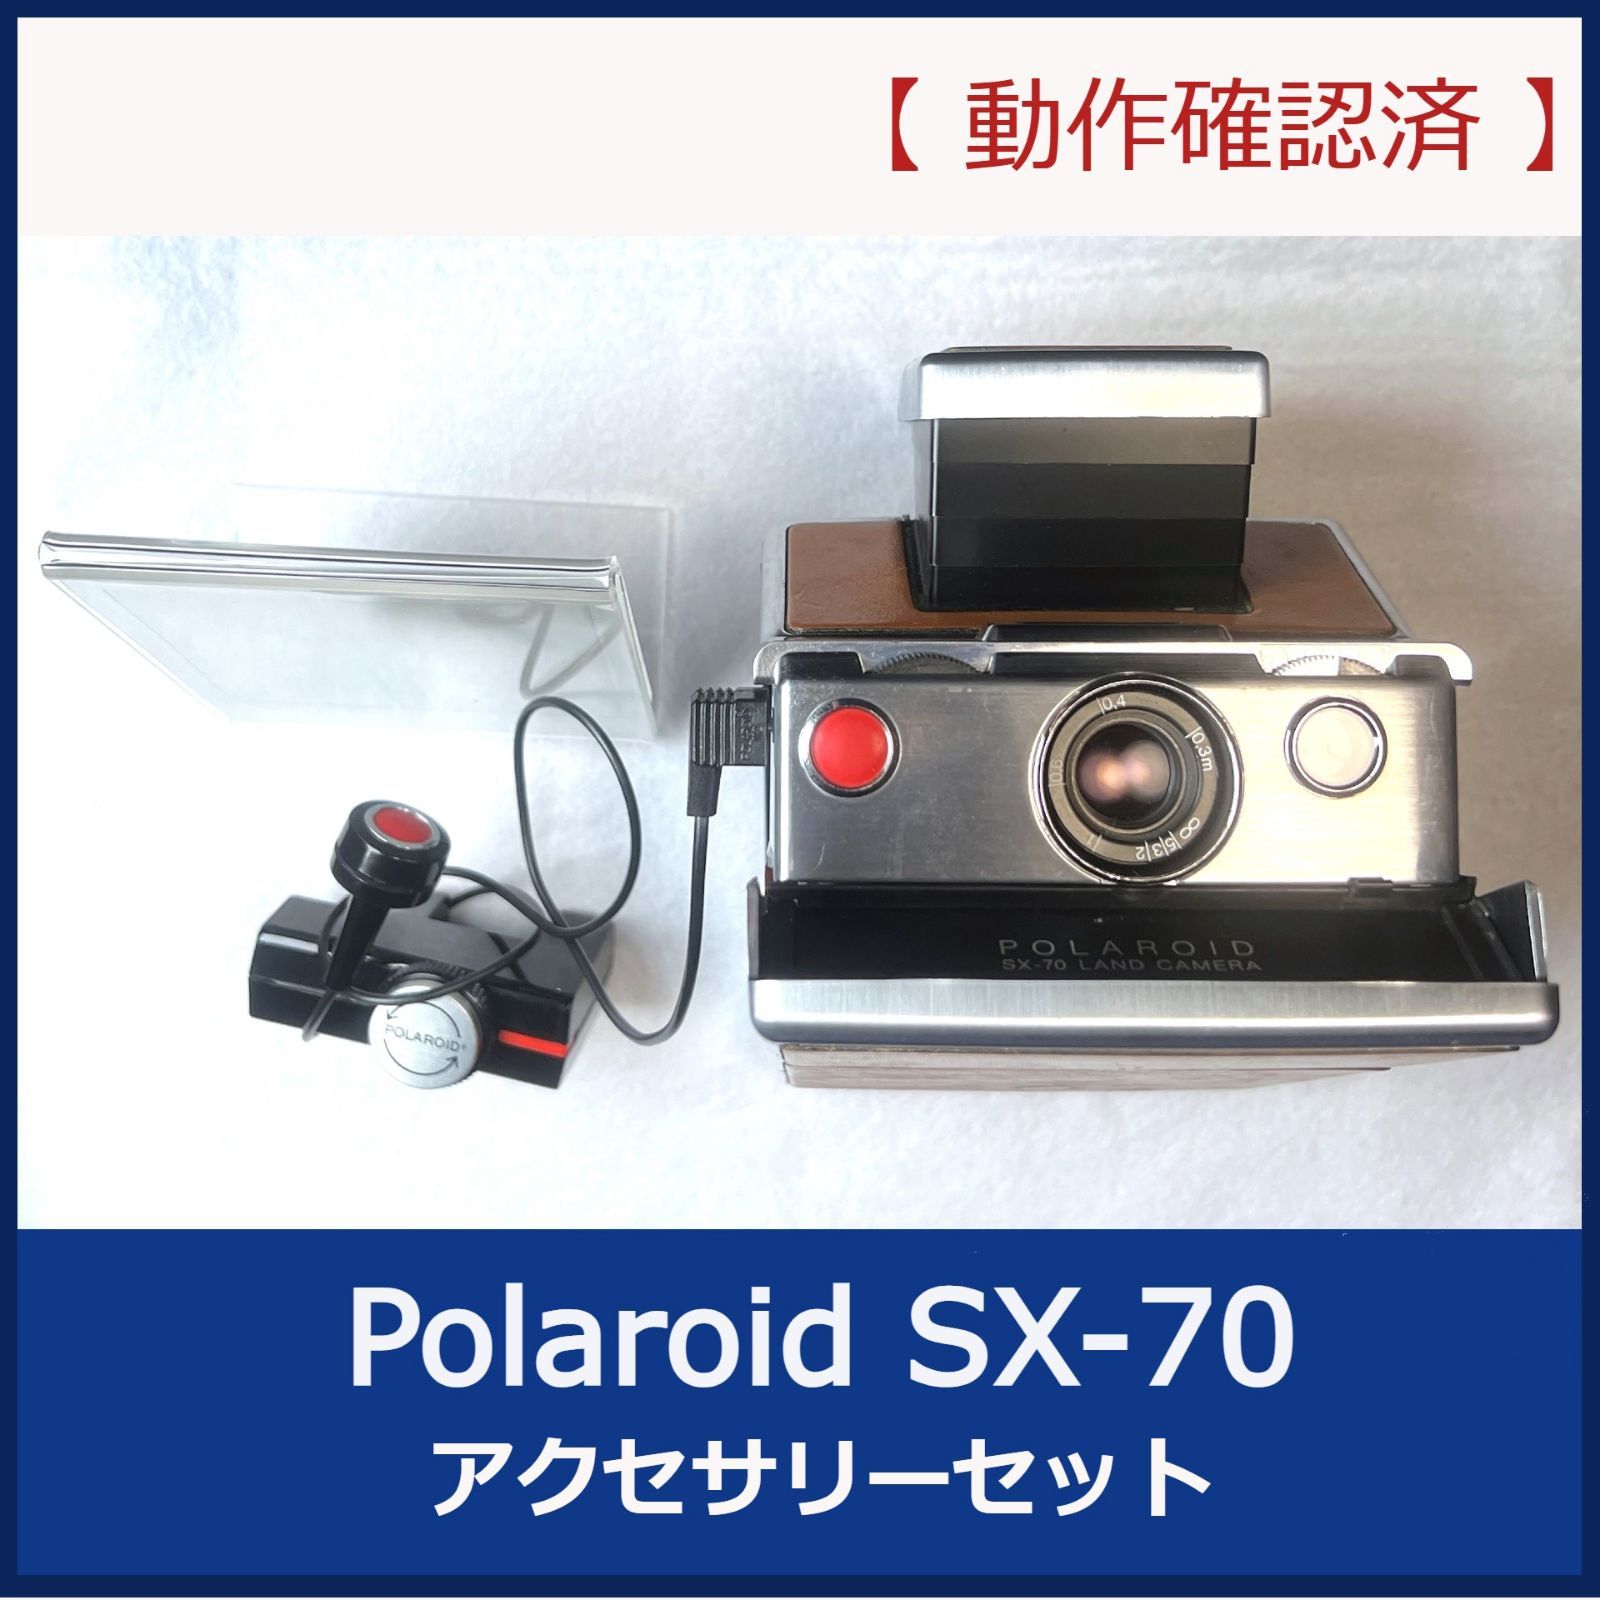 Polaroid ポラロイド SX-70 セットジャンク品としてご理解ください